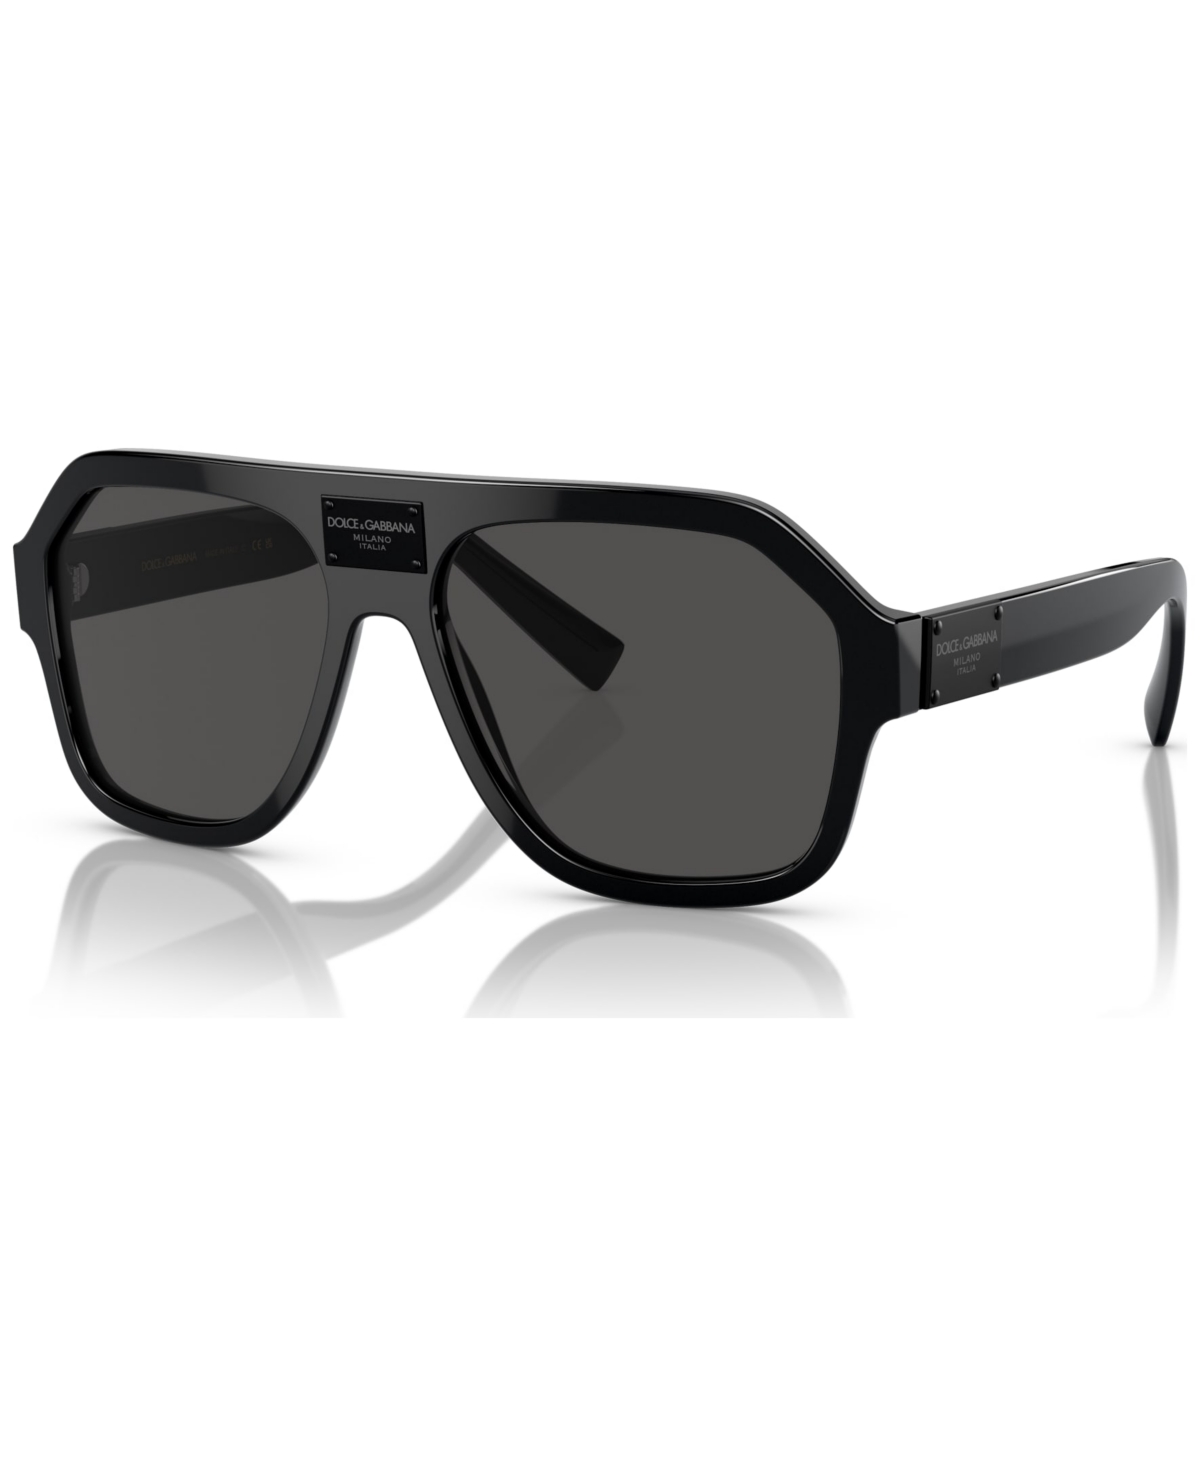 Dolce & Gabbana Men's Sunglasses, Dg4433 In Black